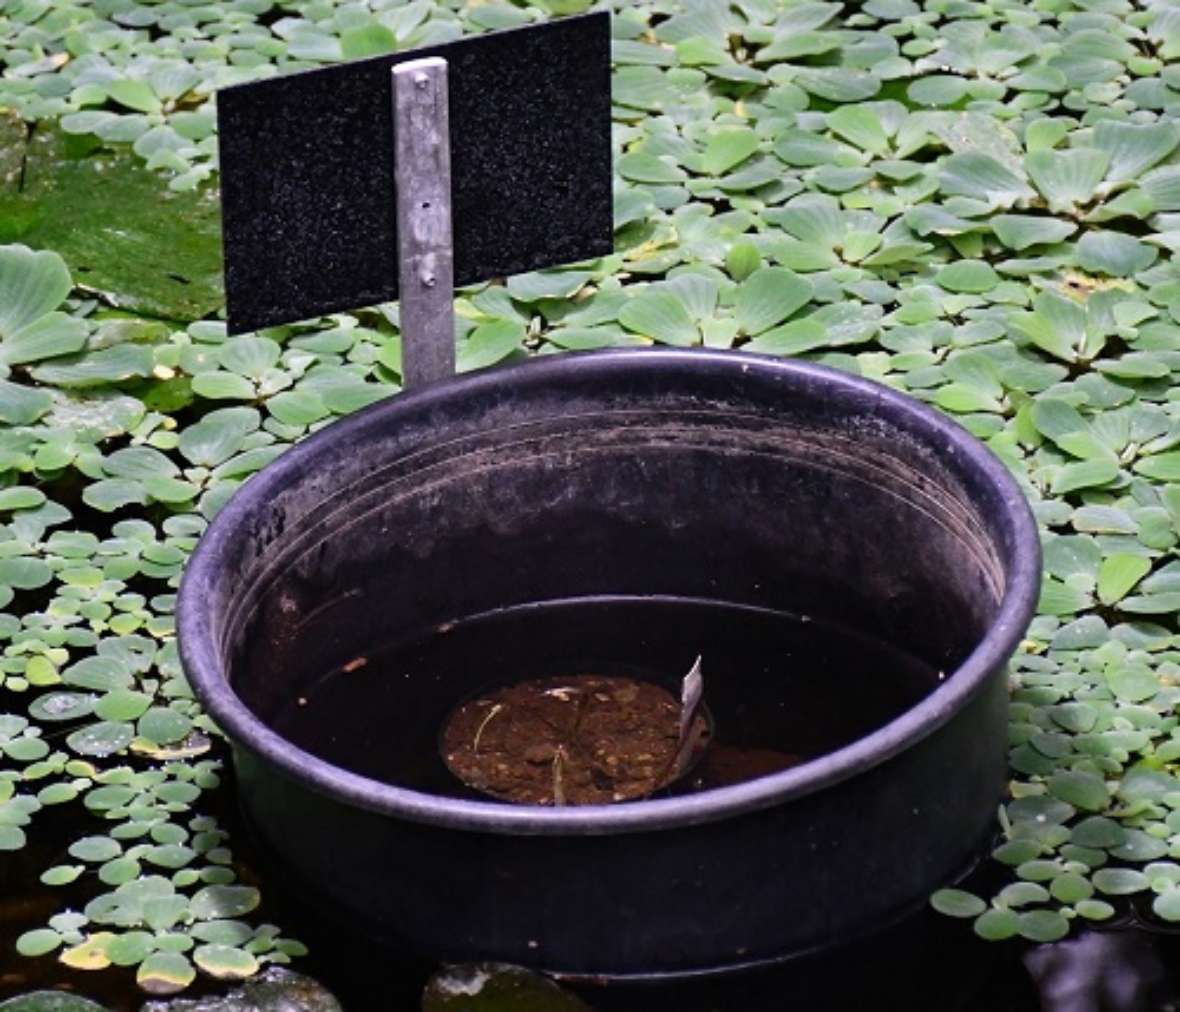 zu sehen ist ein Kübel in dem ein kleiner Topf mit Erde. Dieser Kübel steht in einem Wasserbecken in dem kleine grüne Pflanzen schwimmen.